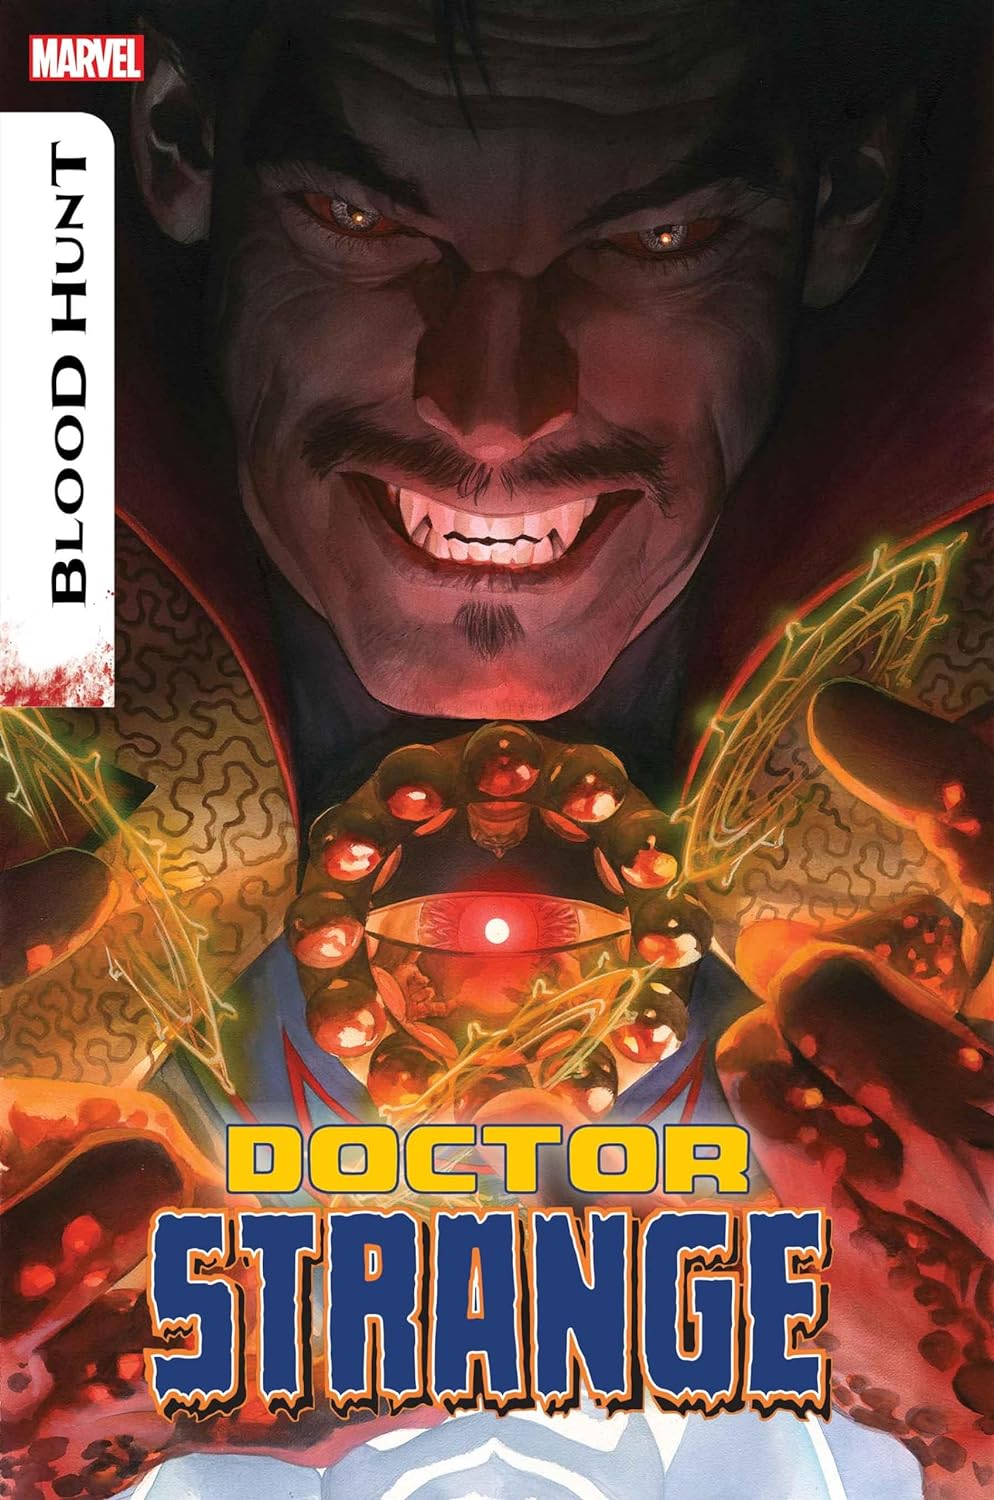 Doctor Strange #15 cover art